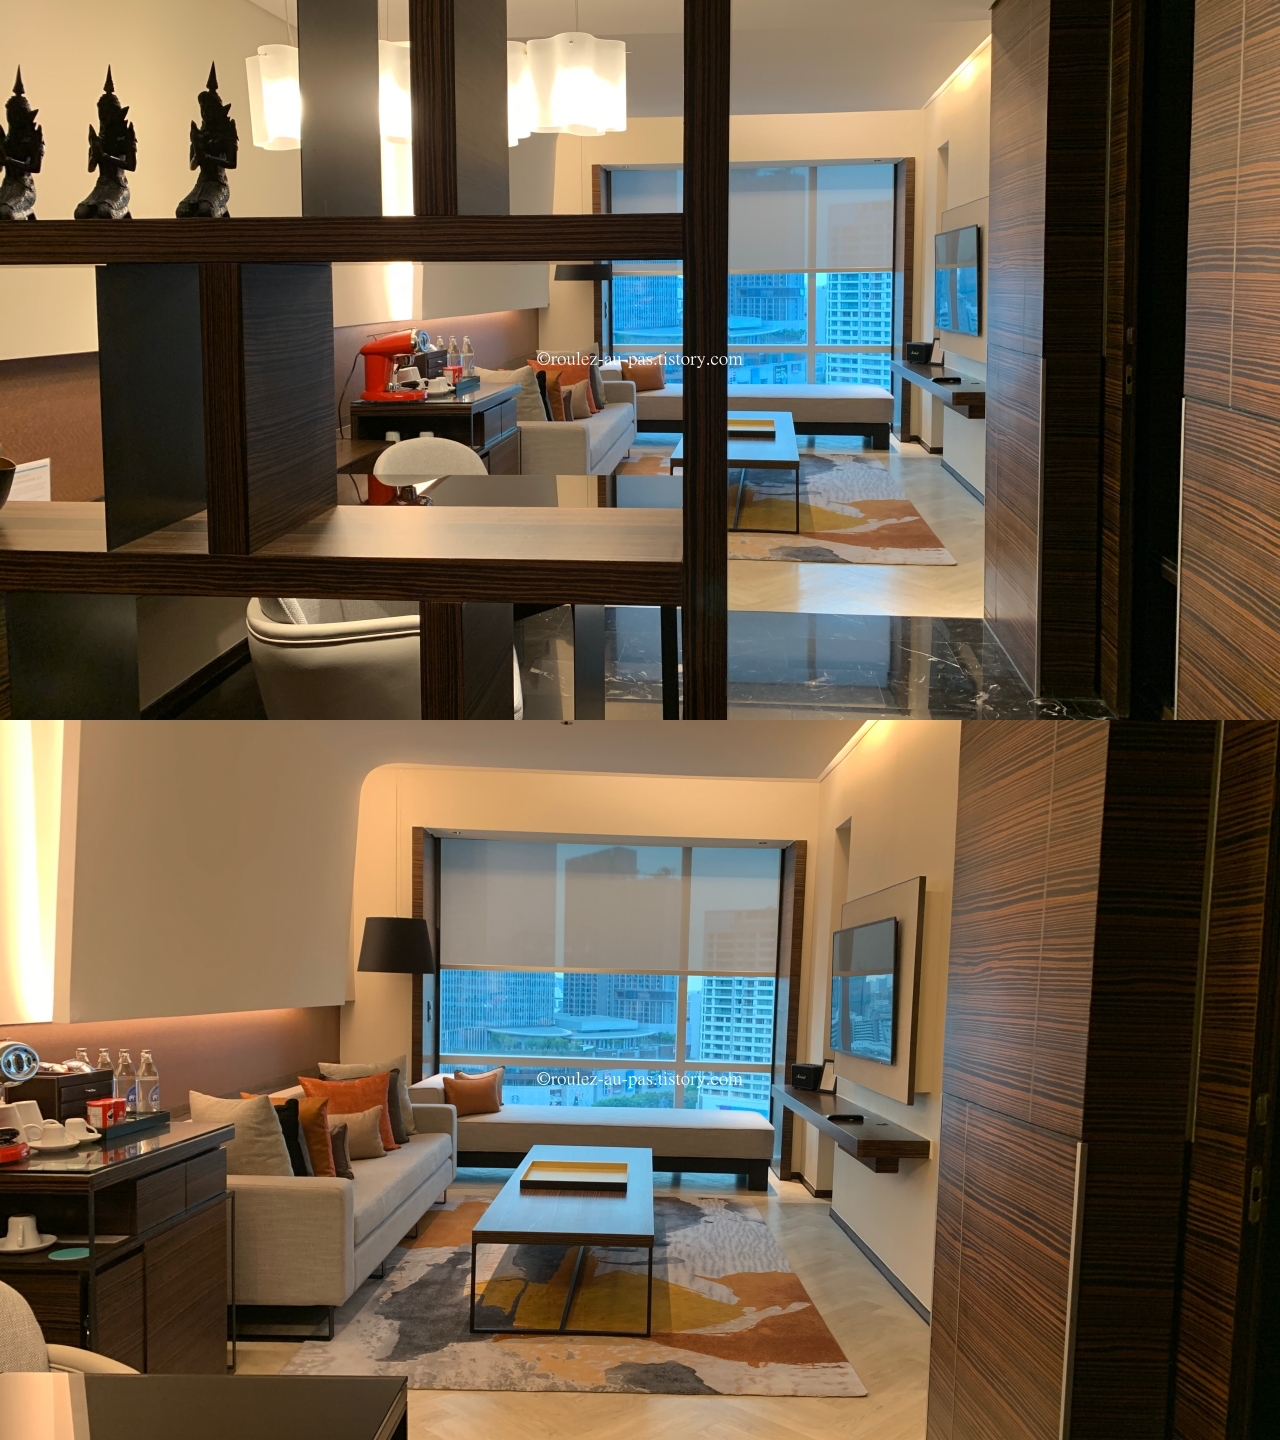 Le_Meridien_bkk_Suite_livingroom